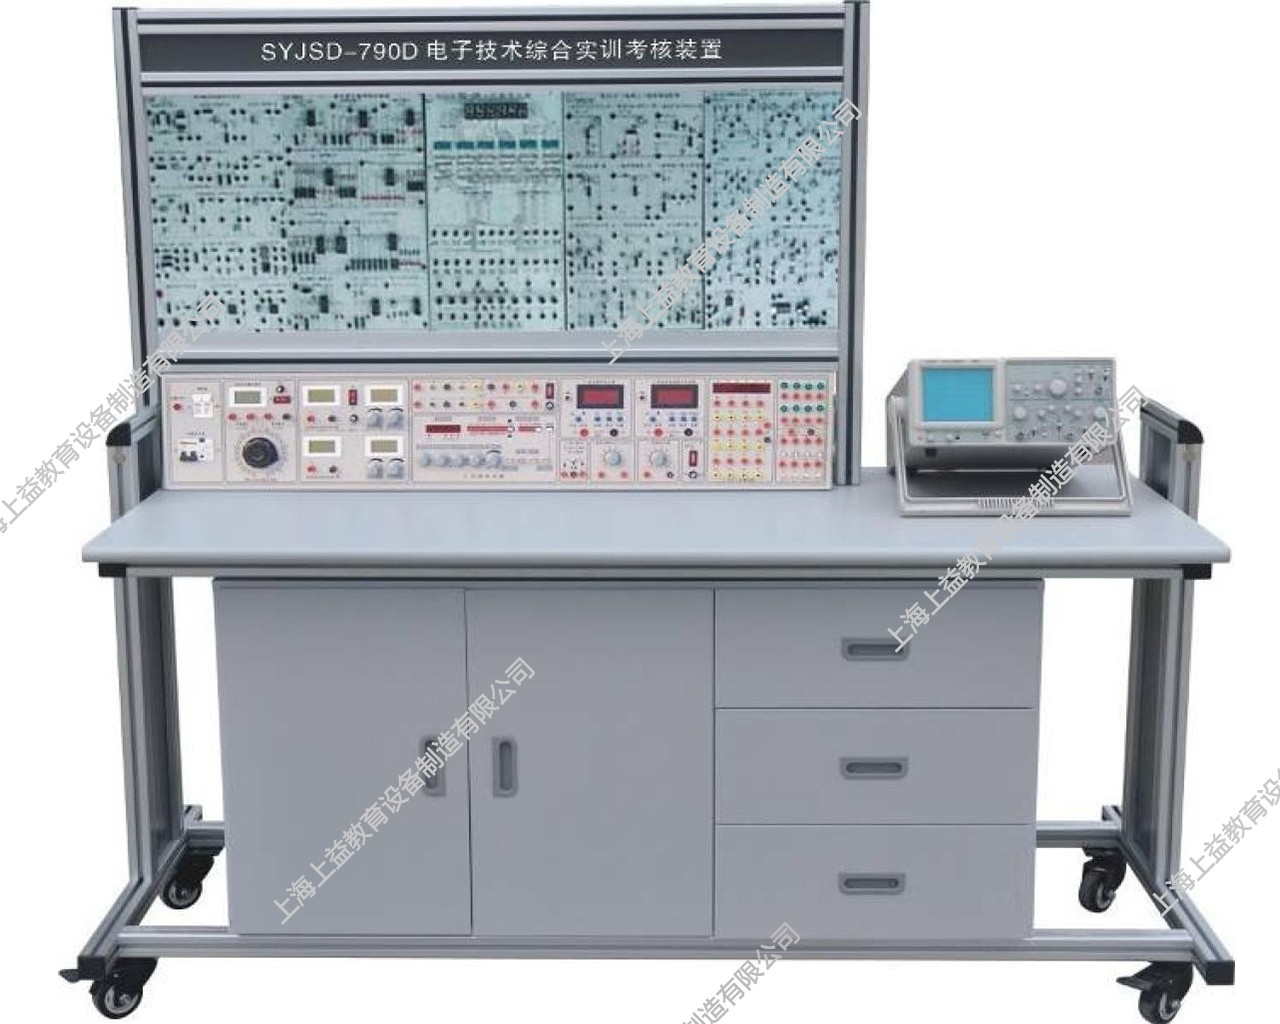 SYJSD-790D电子技术综合实训考核装置